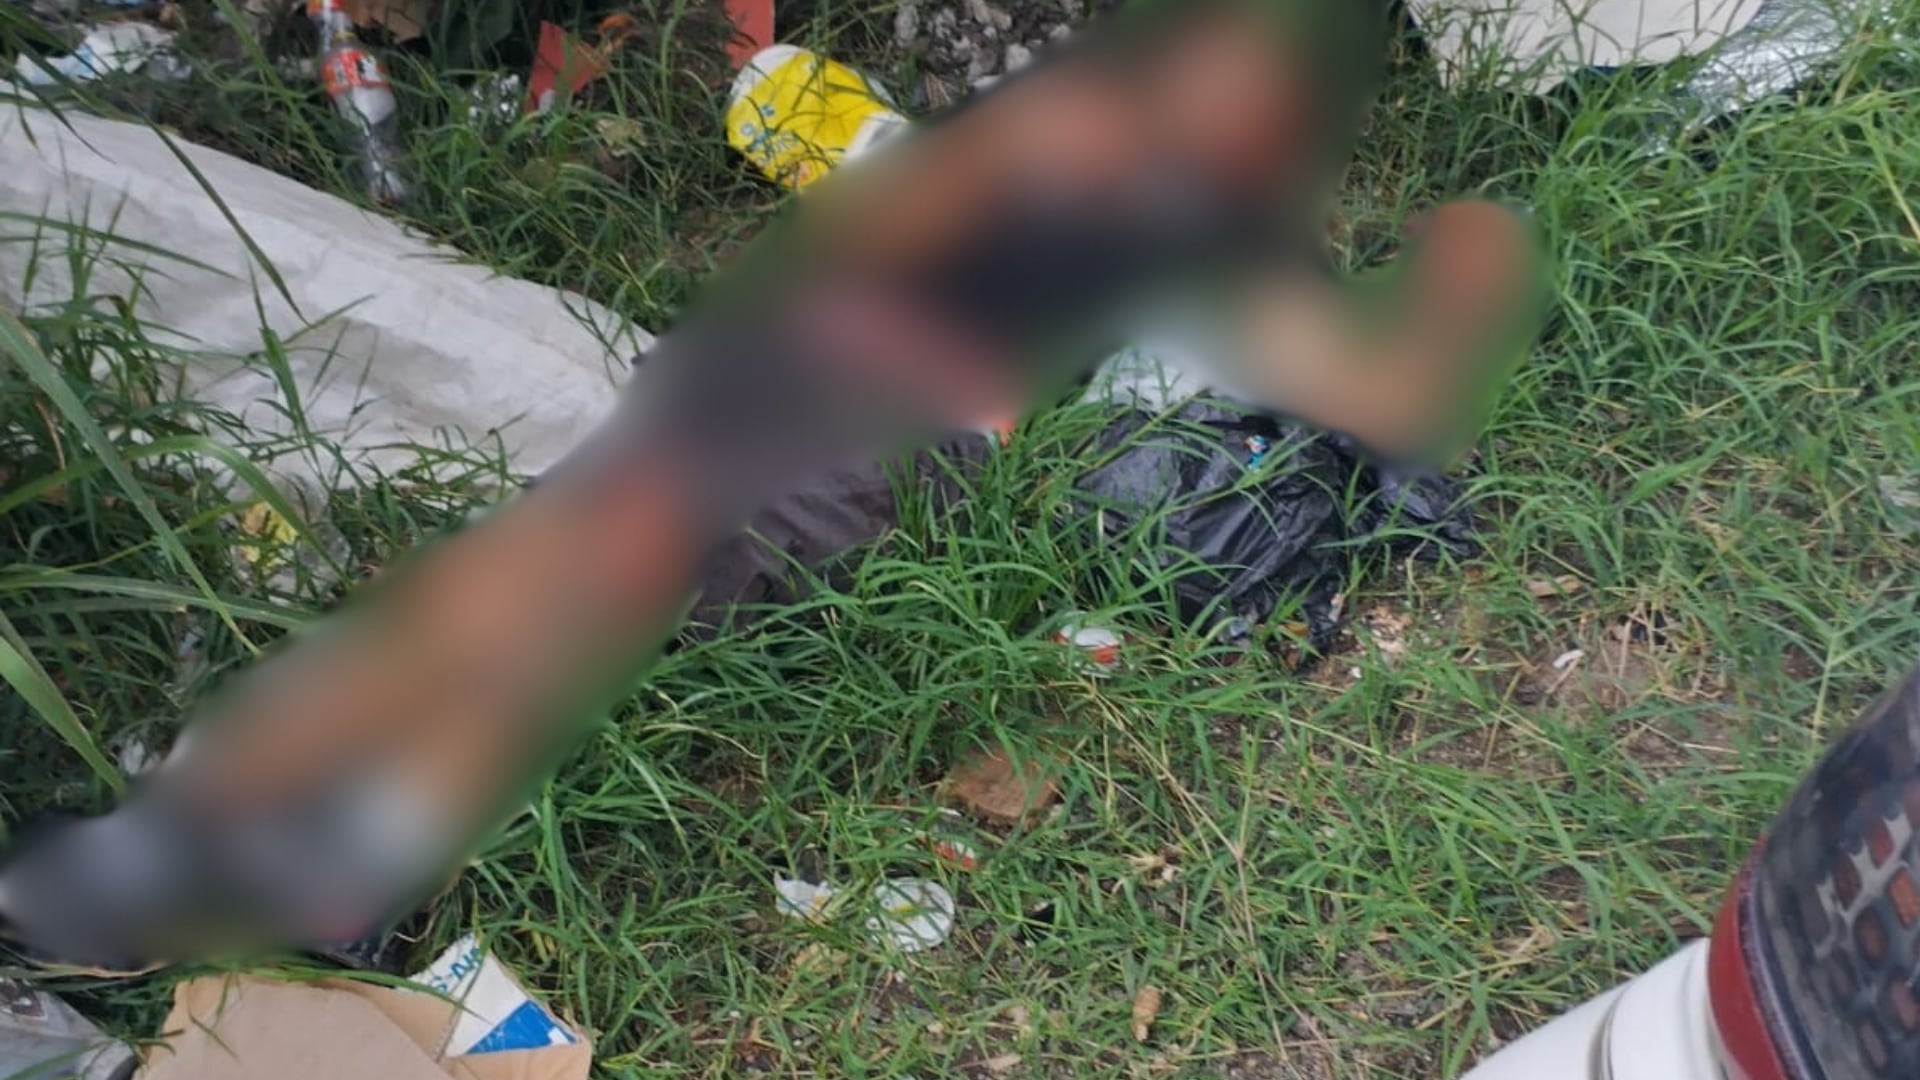 El cuerpo del hombre fue encontrado en vía pública. Foto: Keyna Calderón